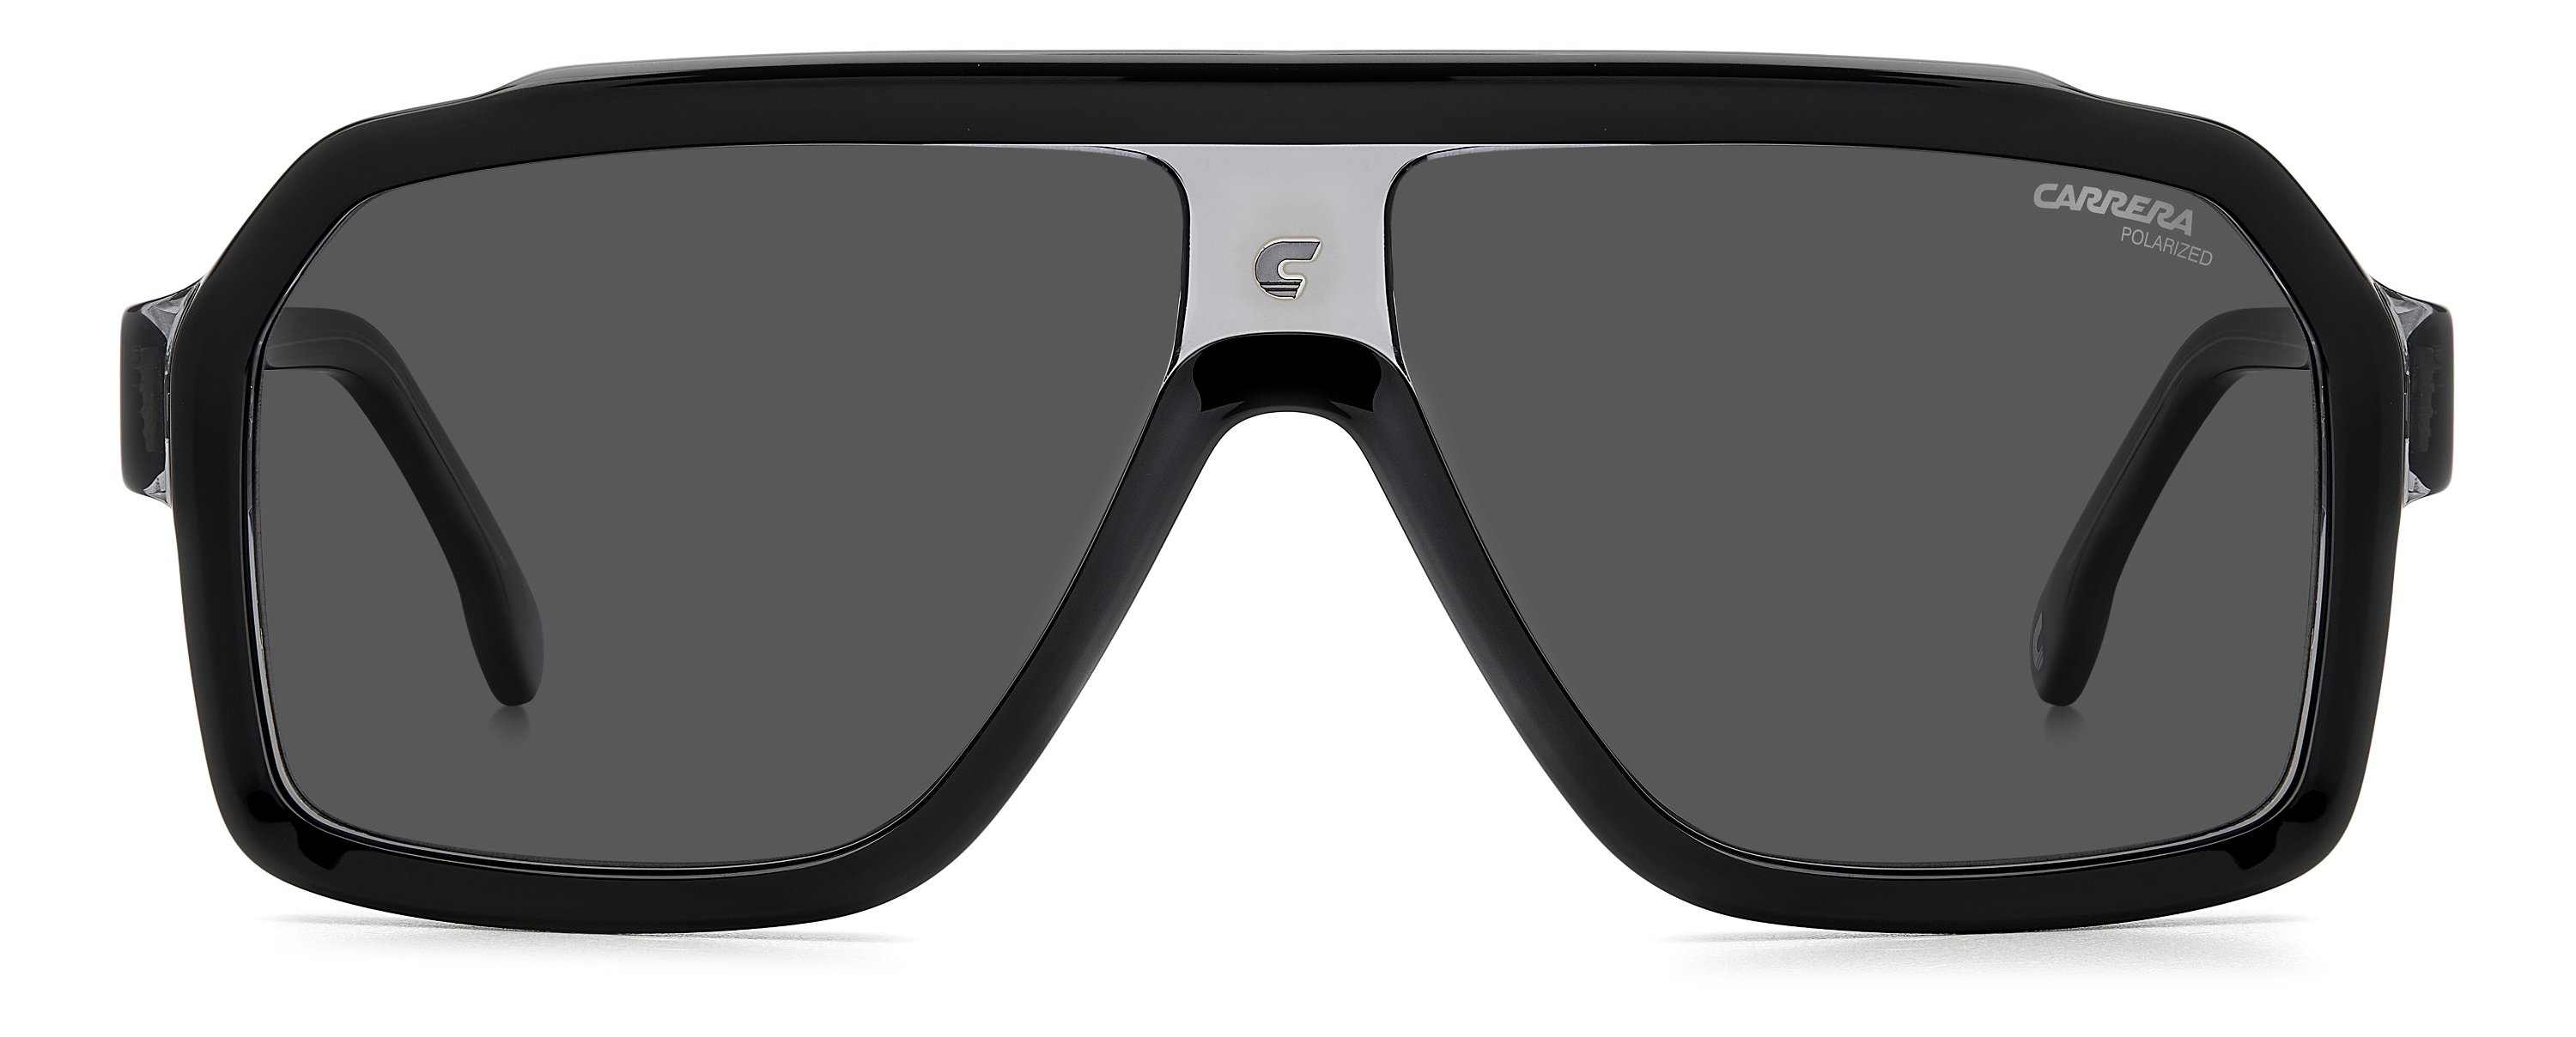 Carrera Sonnenbrille 1053/S UIH dunkelgrau schwarz